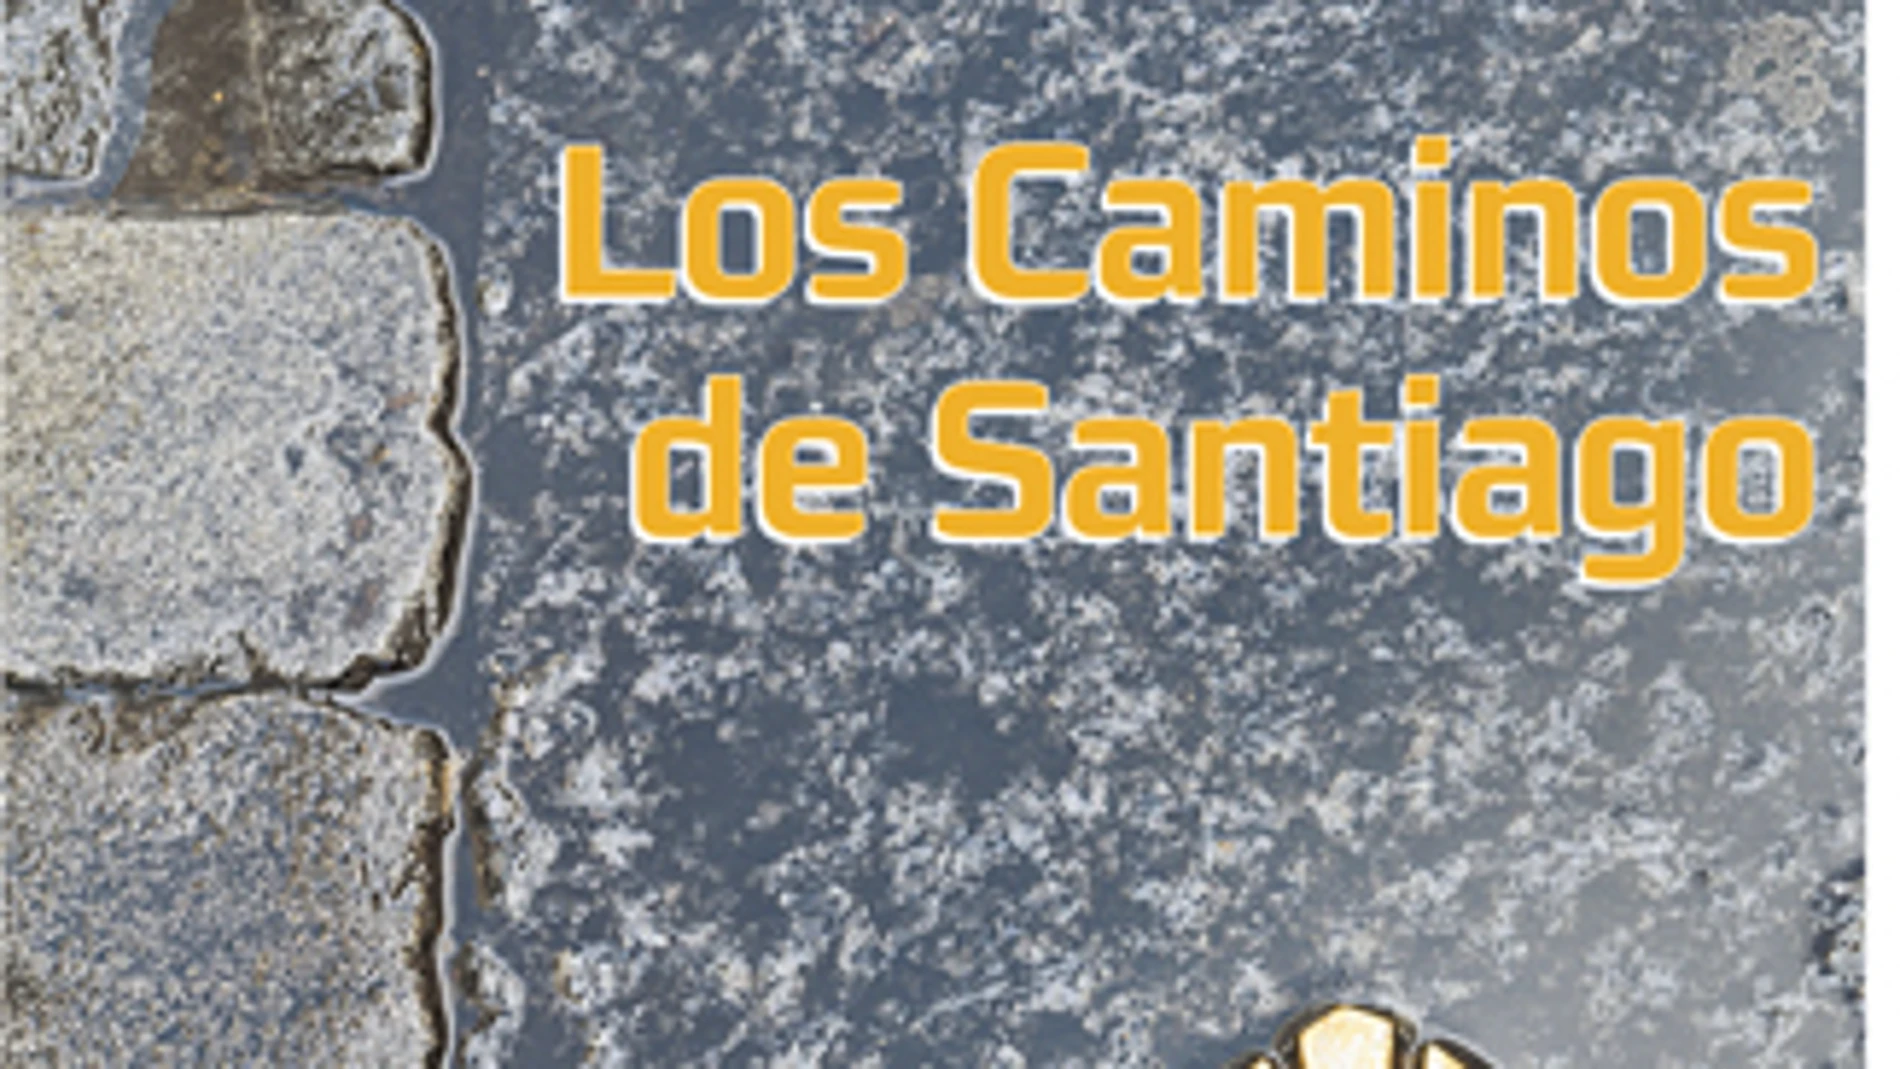 Los Caminos de Santiago